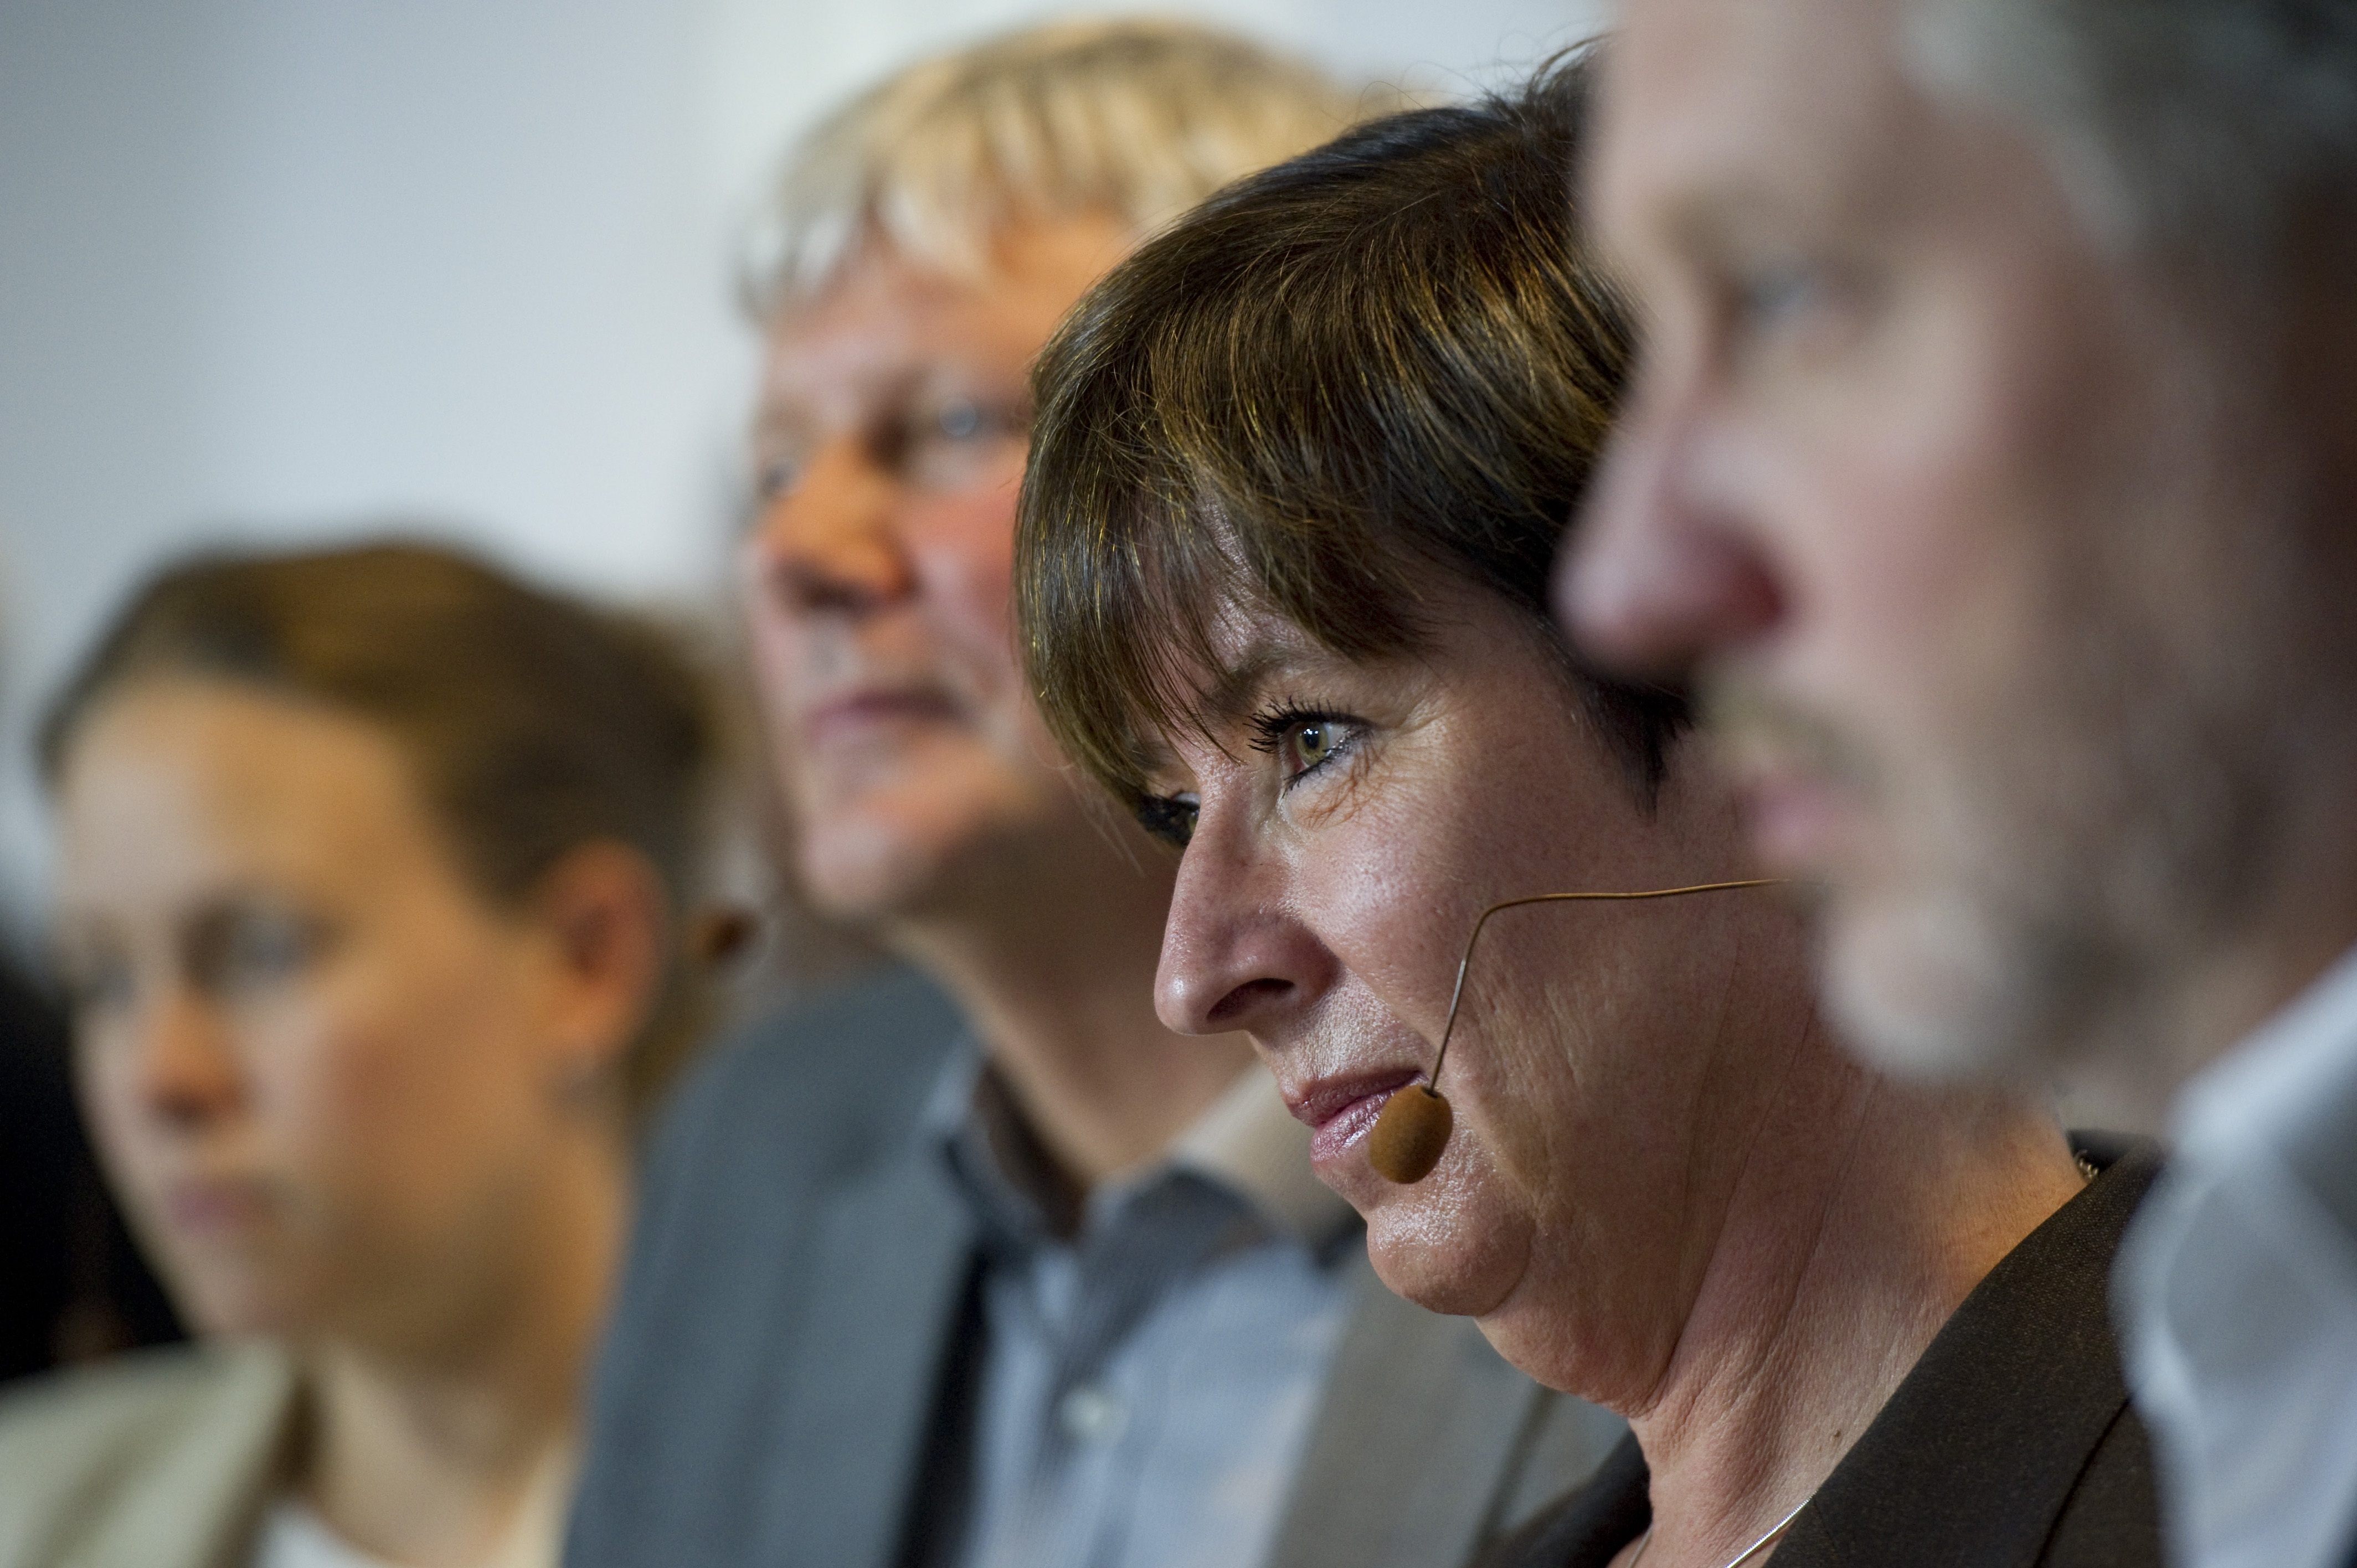 Riksdagsvalet 2010, Socialdemokraterna, Mona Sahlin, Mardröm, Demoskop, Moderaterna